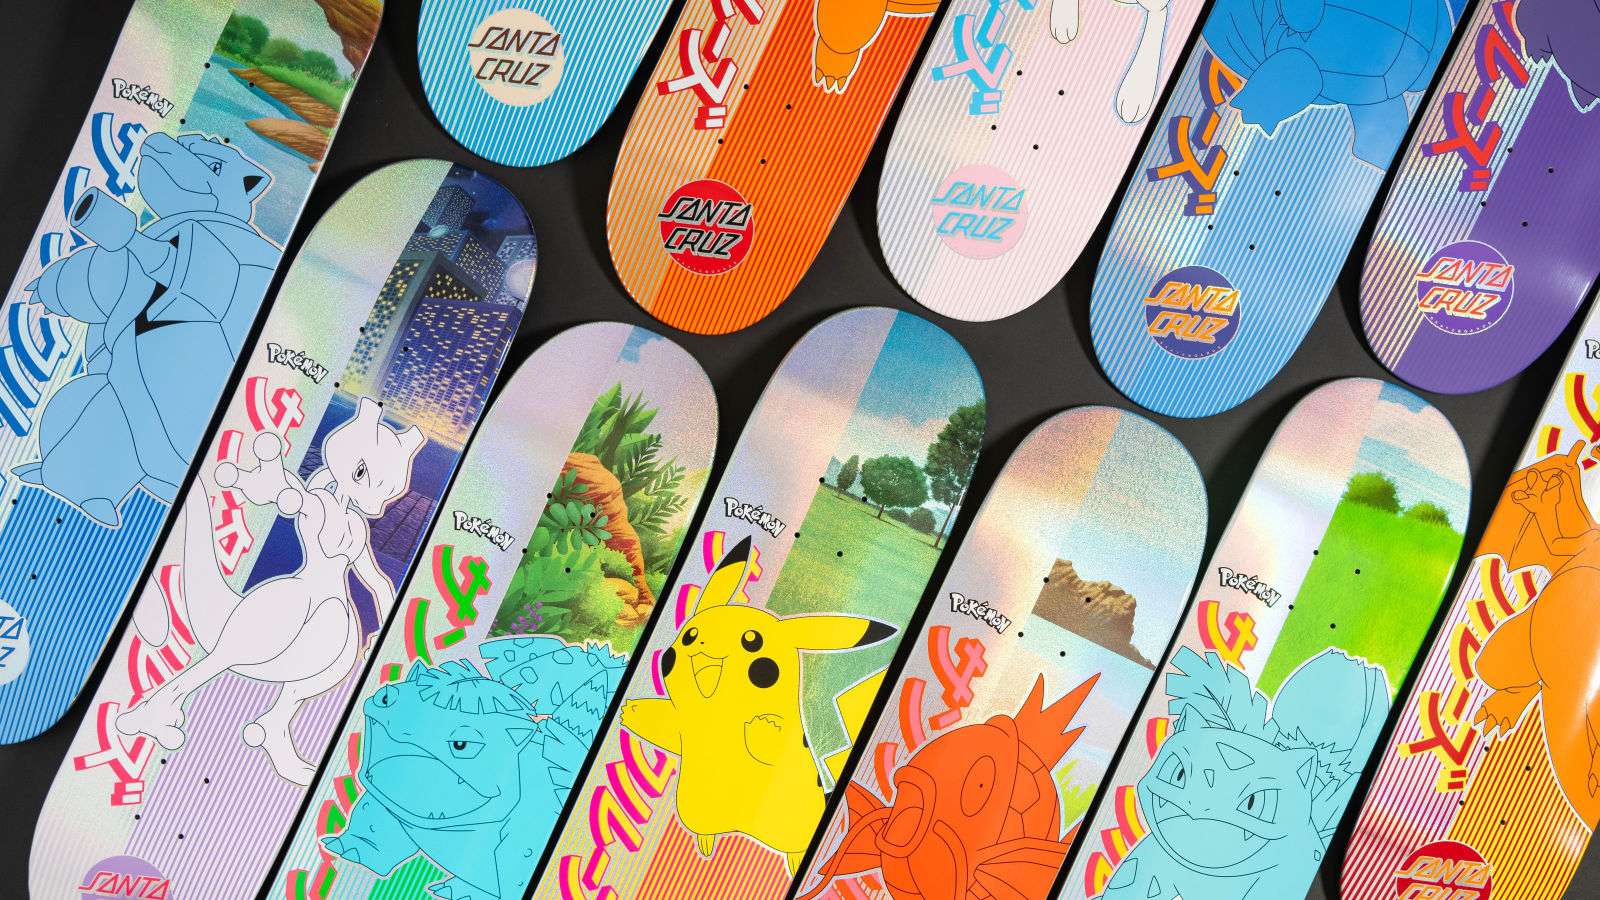 Pokemon X Santa Cruz Skateboards